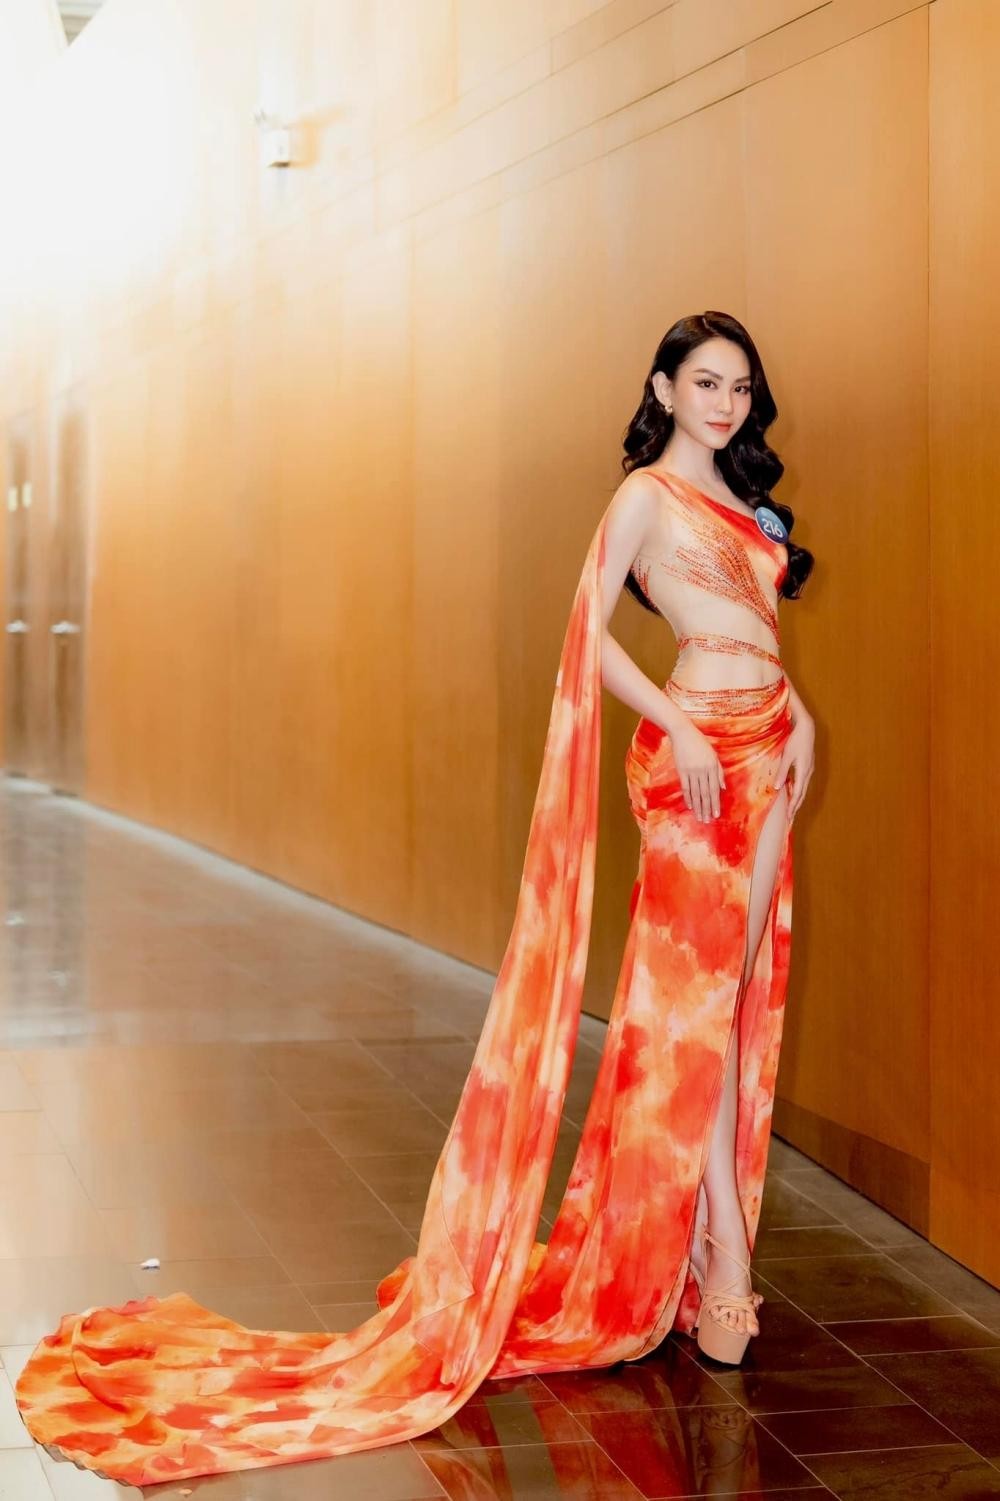 Hoa hậu Mai Phương cực khéo chọn đầm dạ hội, thiết kế nào cũng tôn dáng tuyệt đối - Ảnh 7.